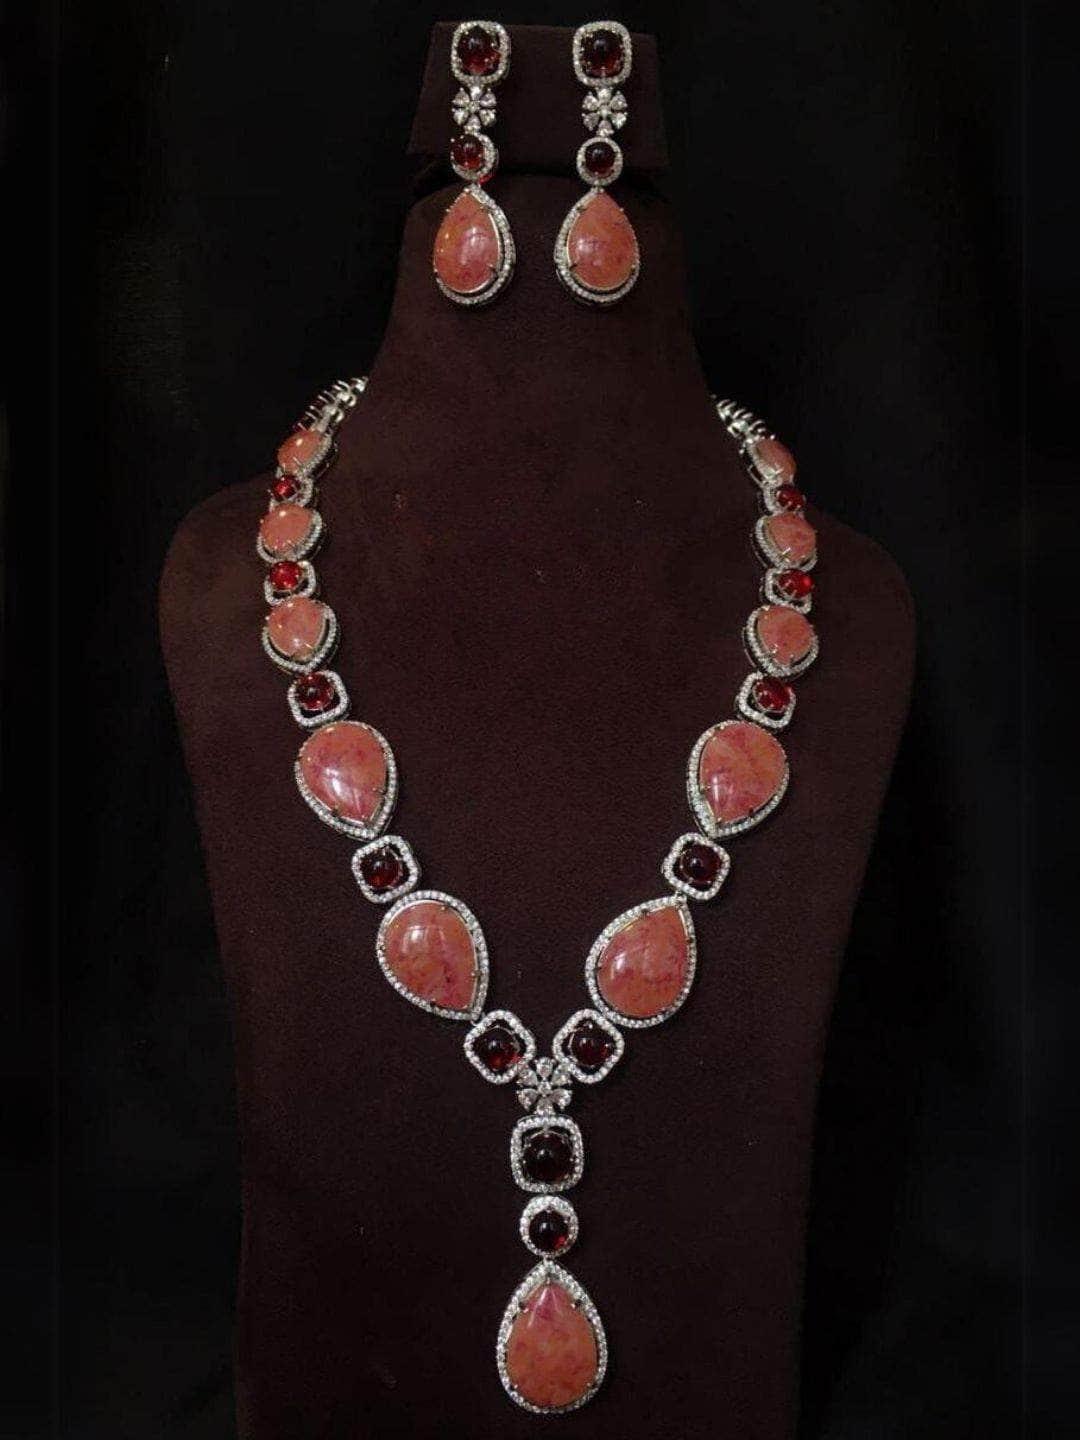 Ishhaara Monet Necklace With Teardrop Pendant